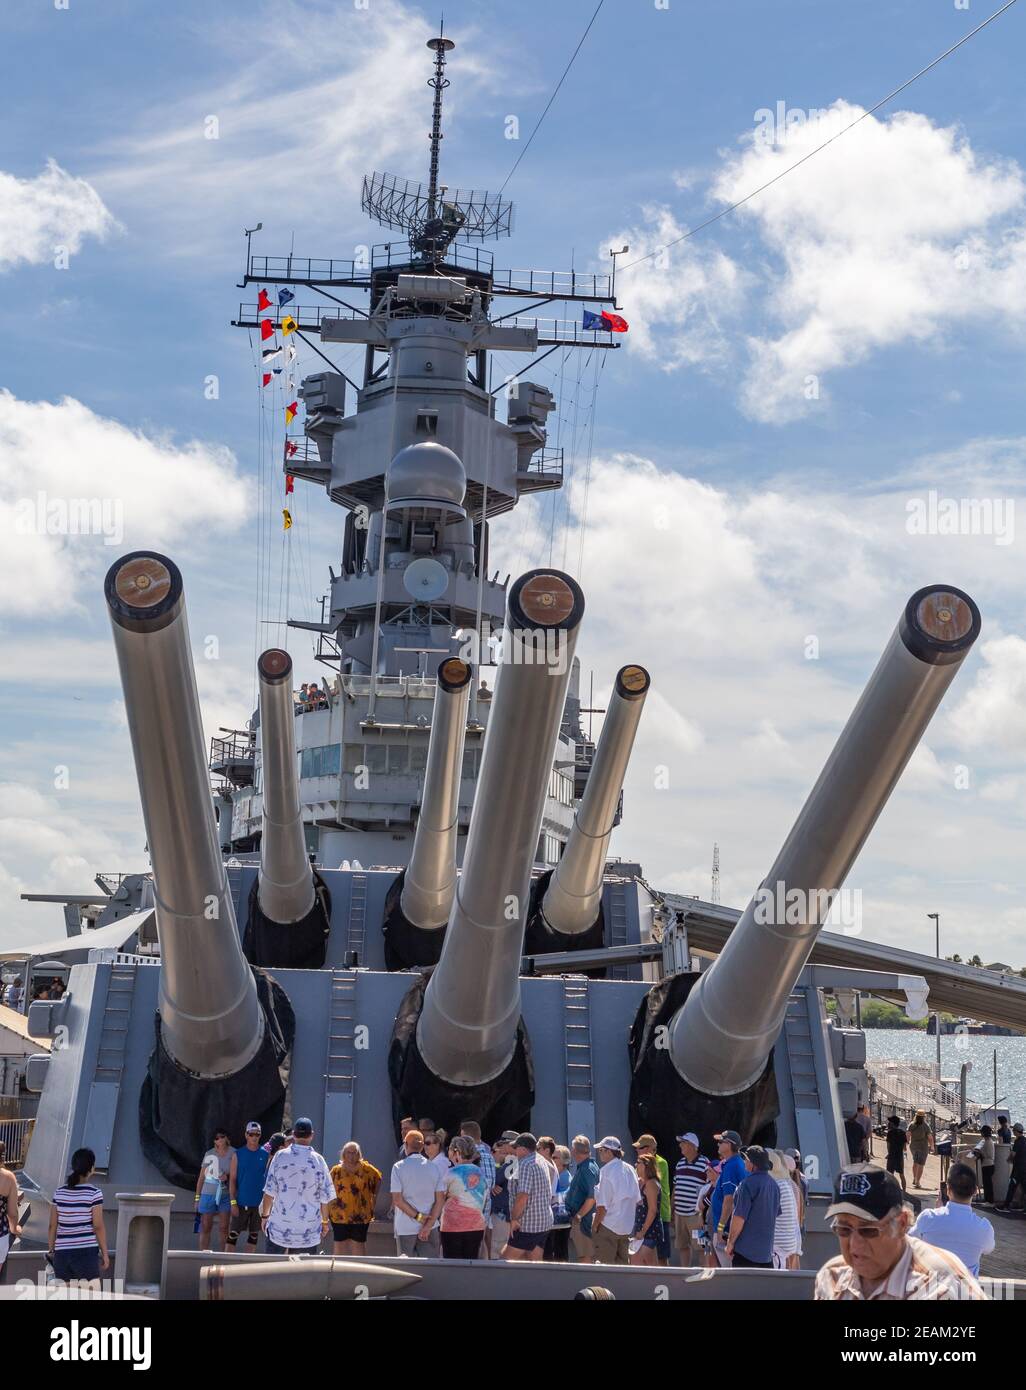 Pearl Harbor, Hawaii, USA - 24. September 2018: Touristen, die an Deck der USS Missouri neben riesigen Kanonen stehen, dockten in Pearl Harbor an. Blauer Himmel mit w Stockfoto